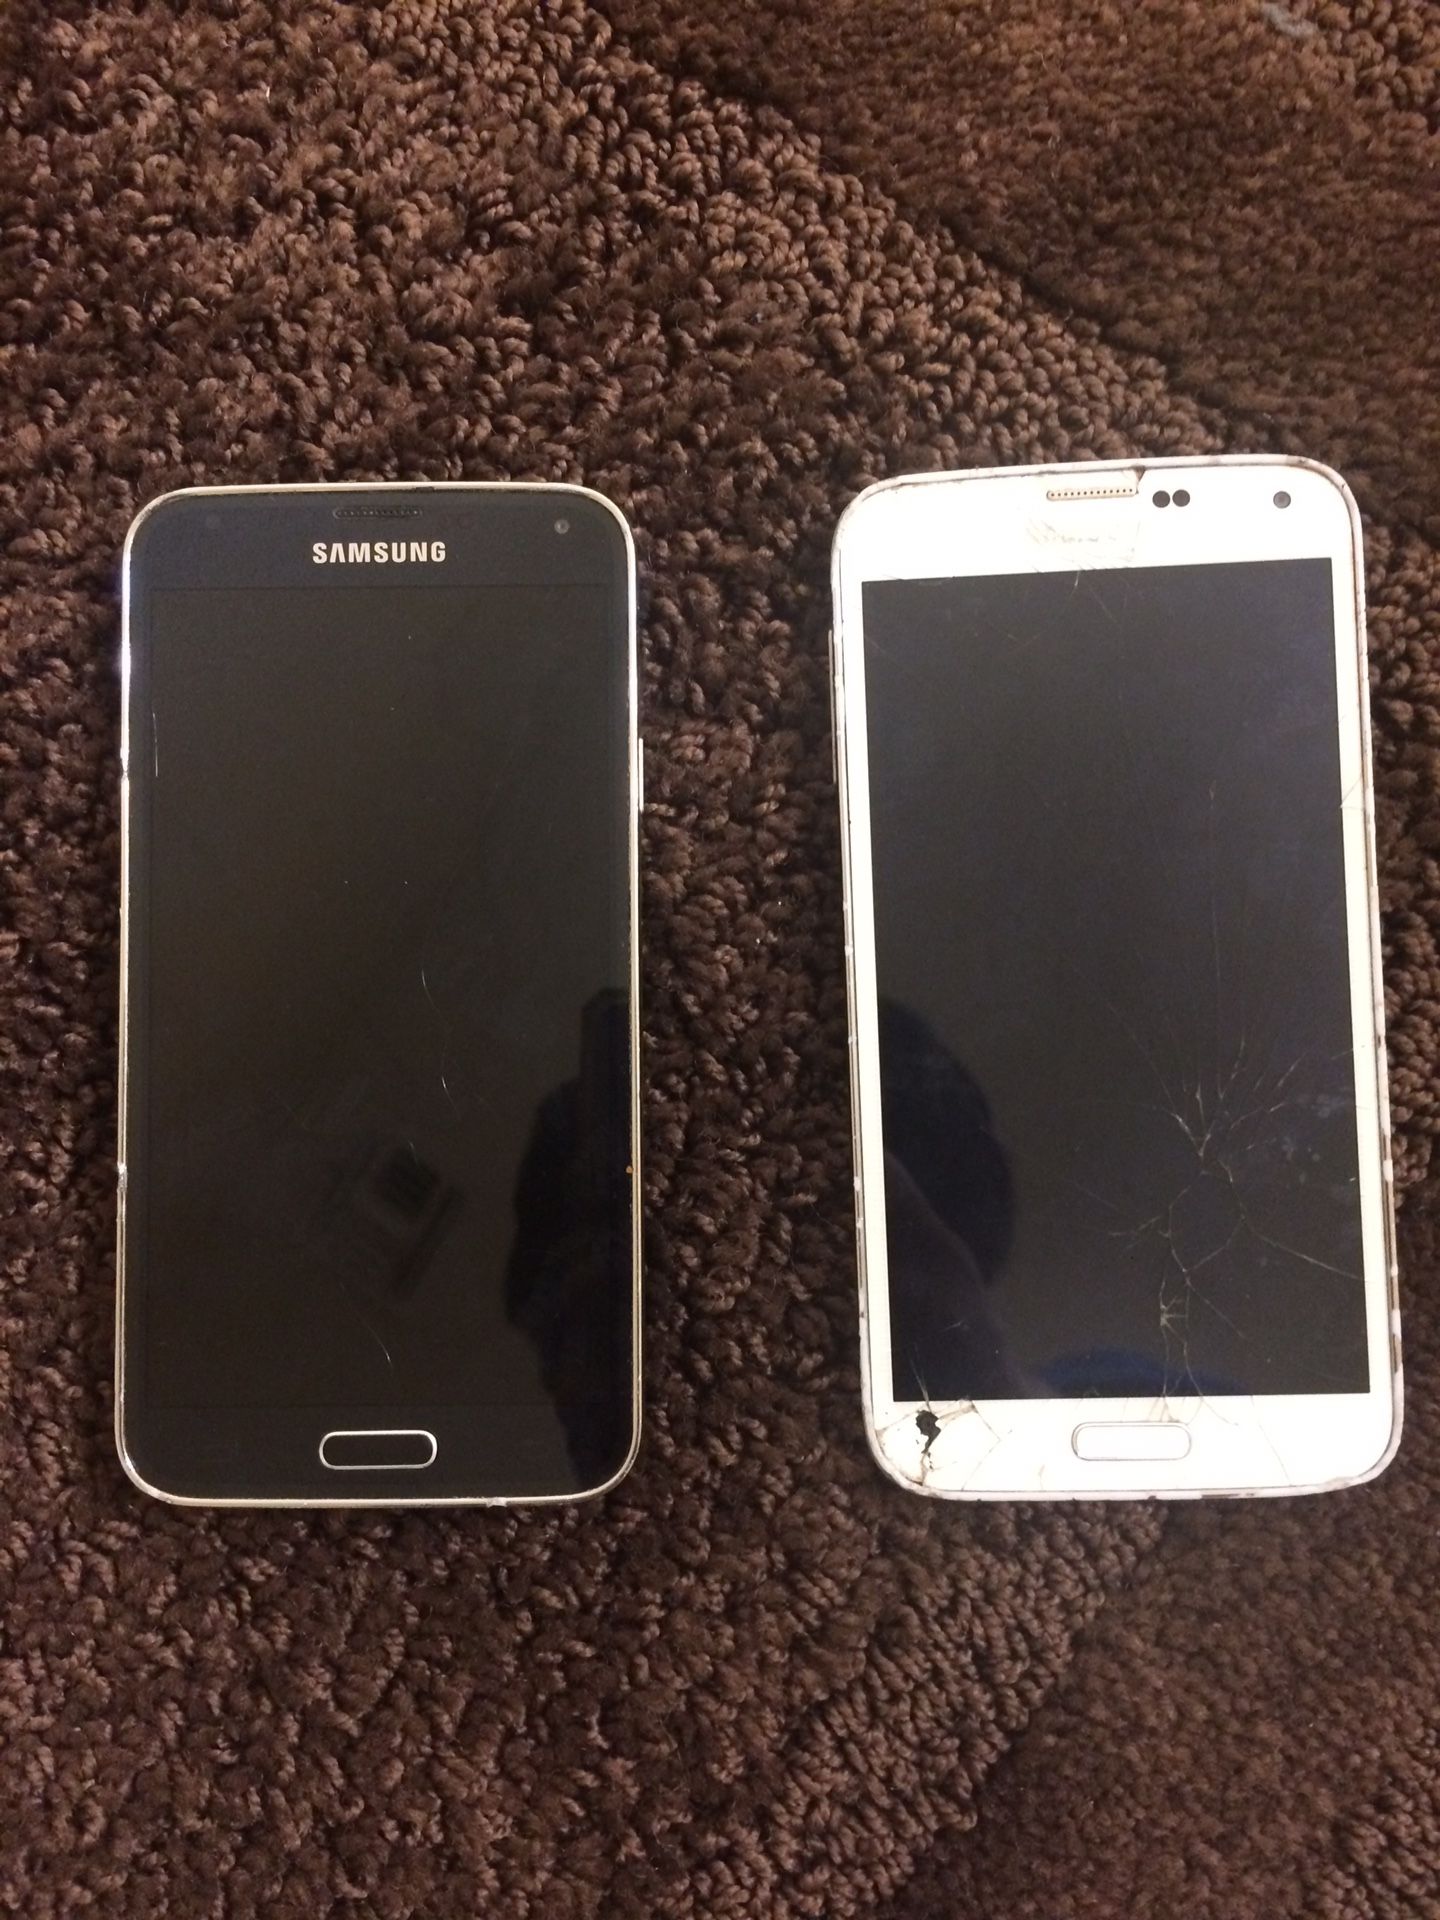 2 Samsung galaxy s5 (unlocked)